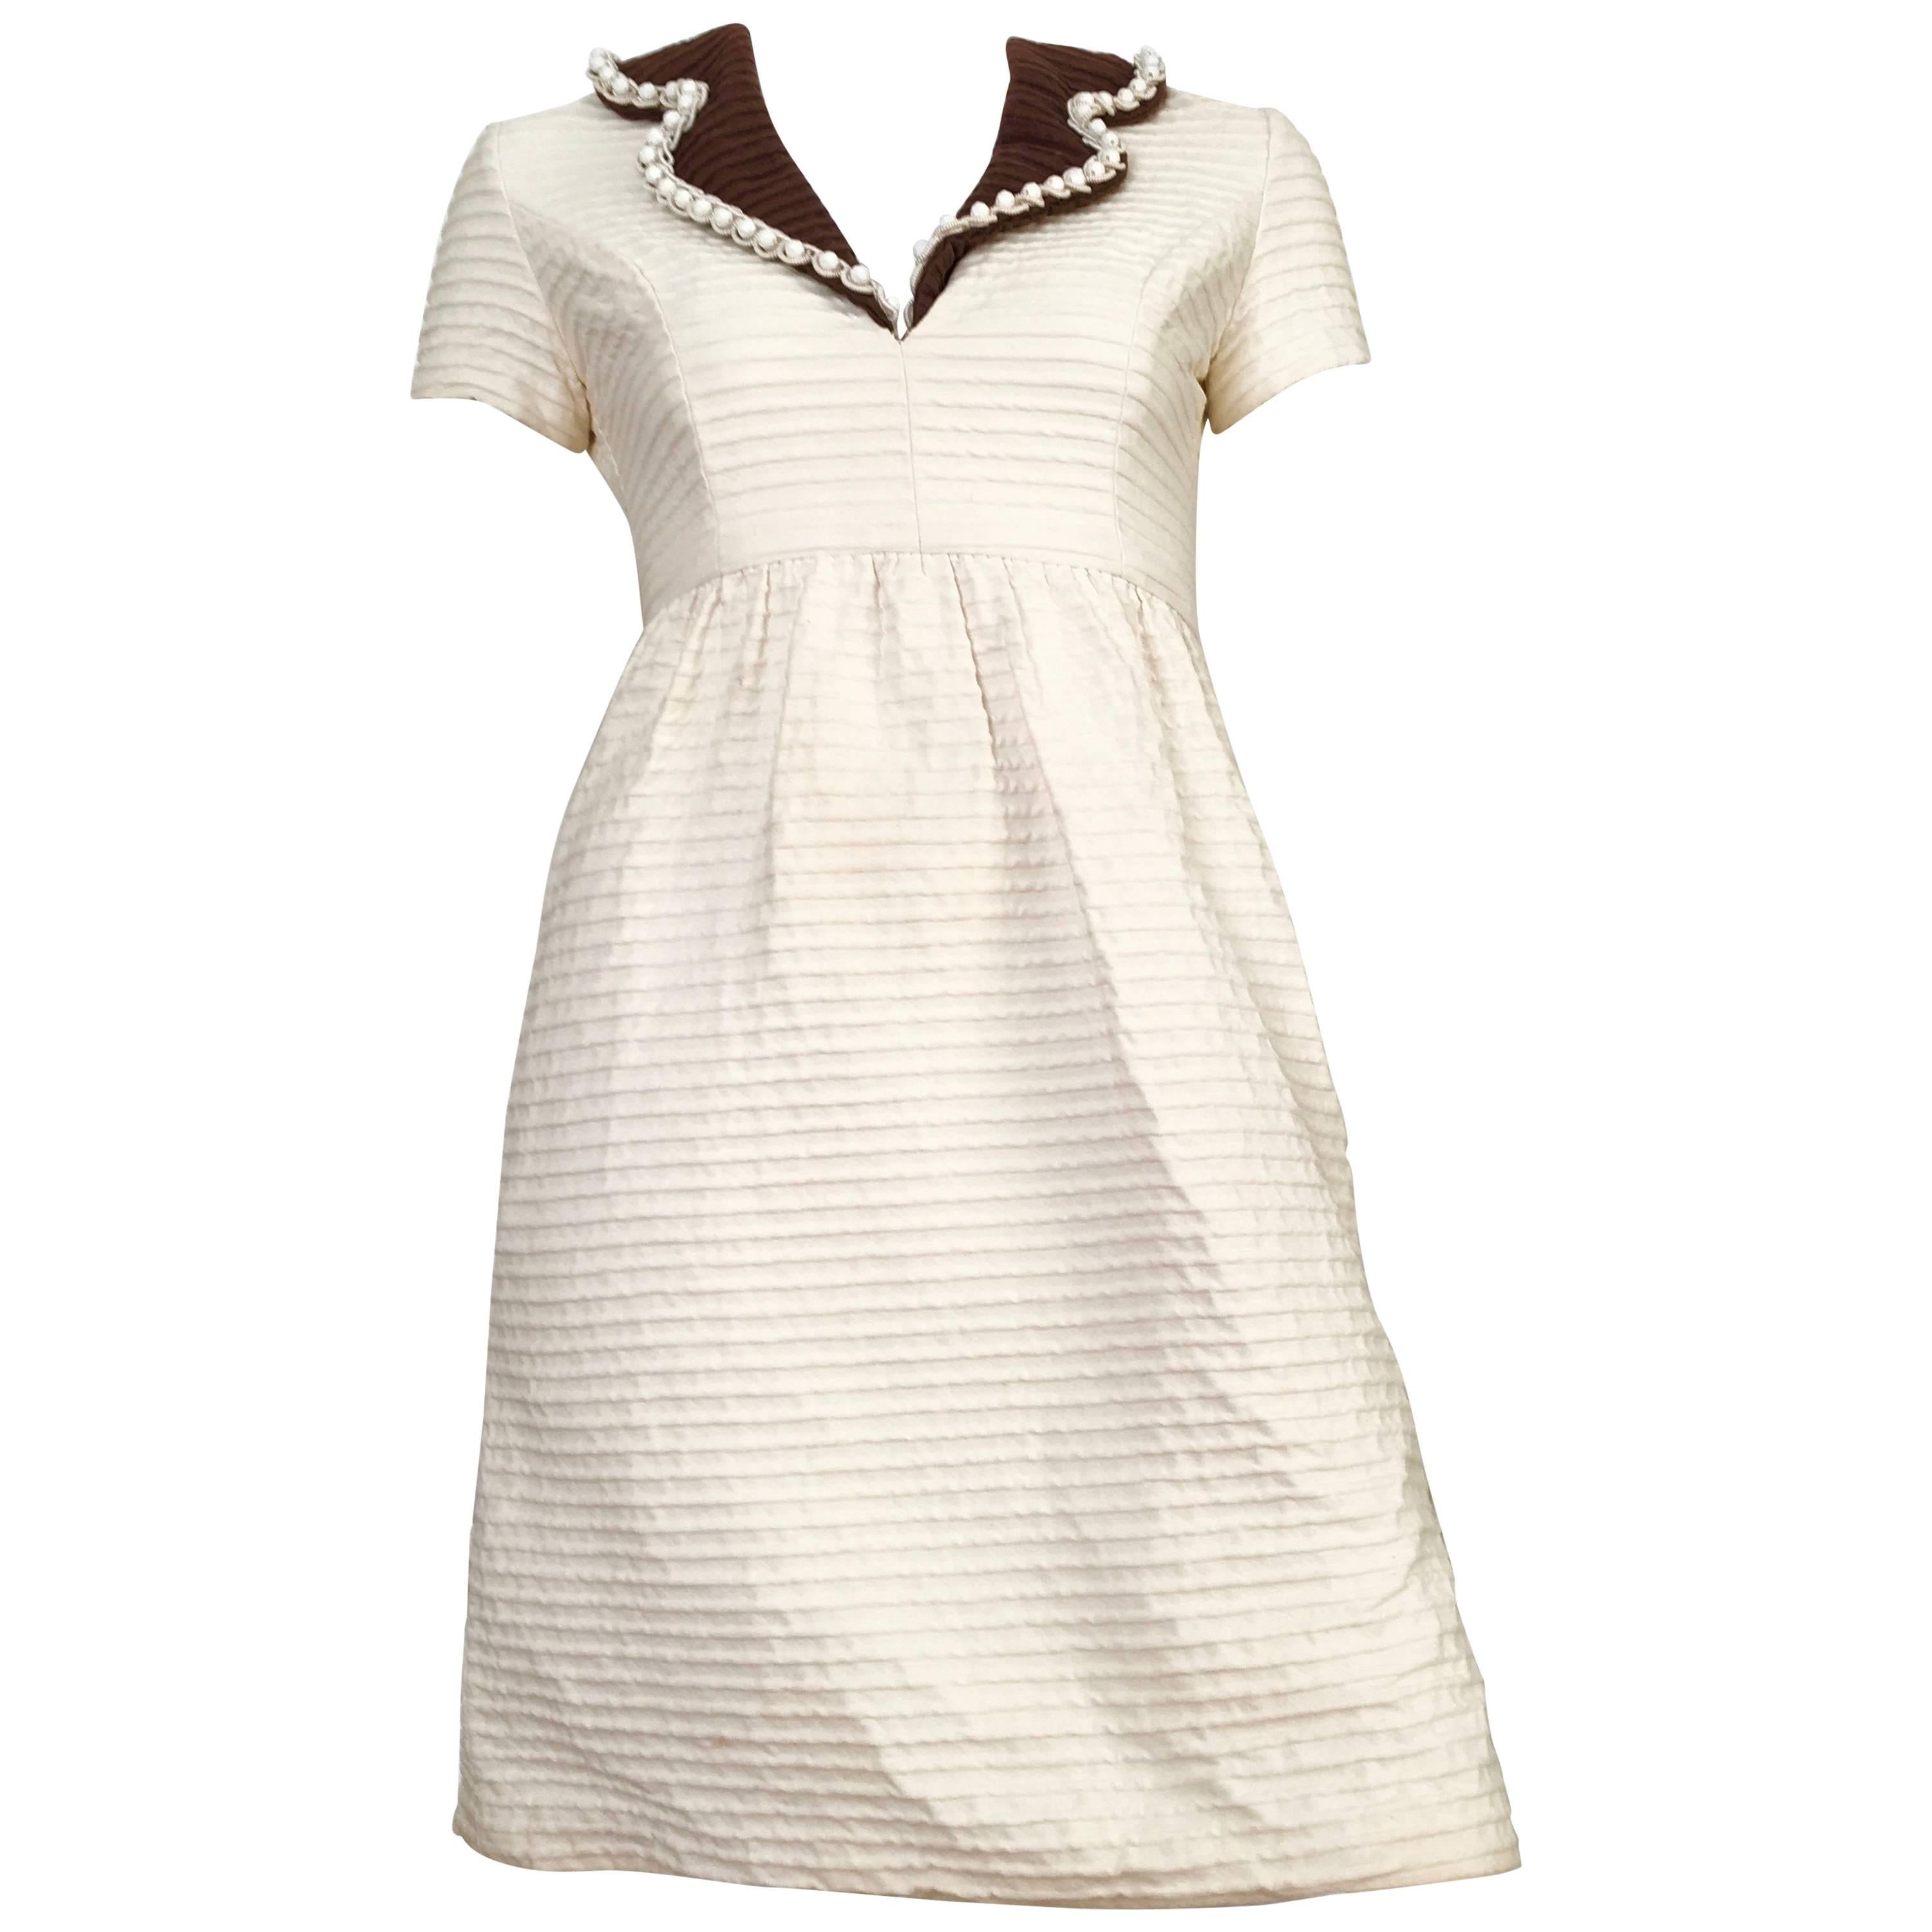 Oscar de la Renta Cotton Dress with Pockets Size 2. For Sale